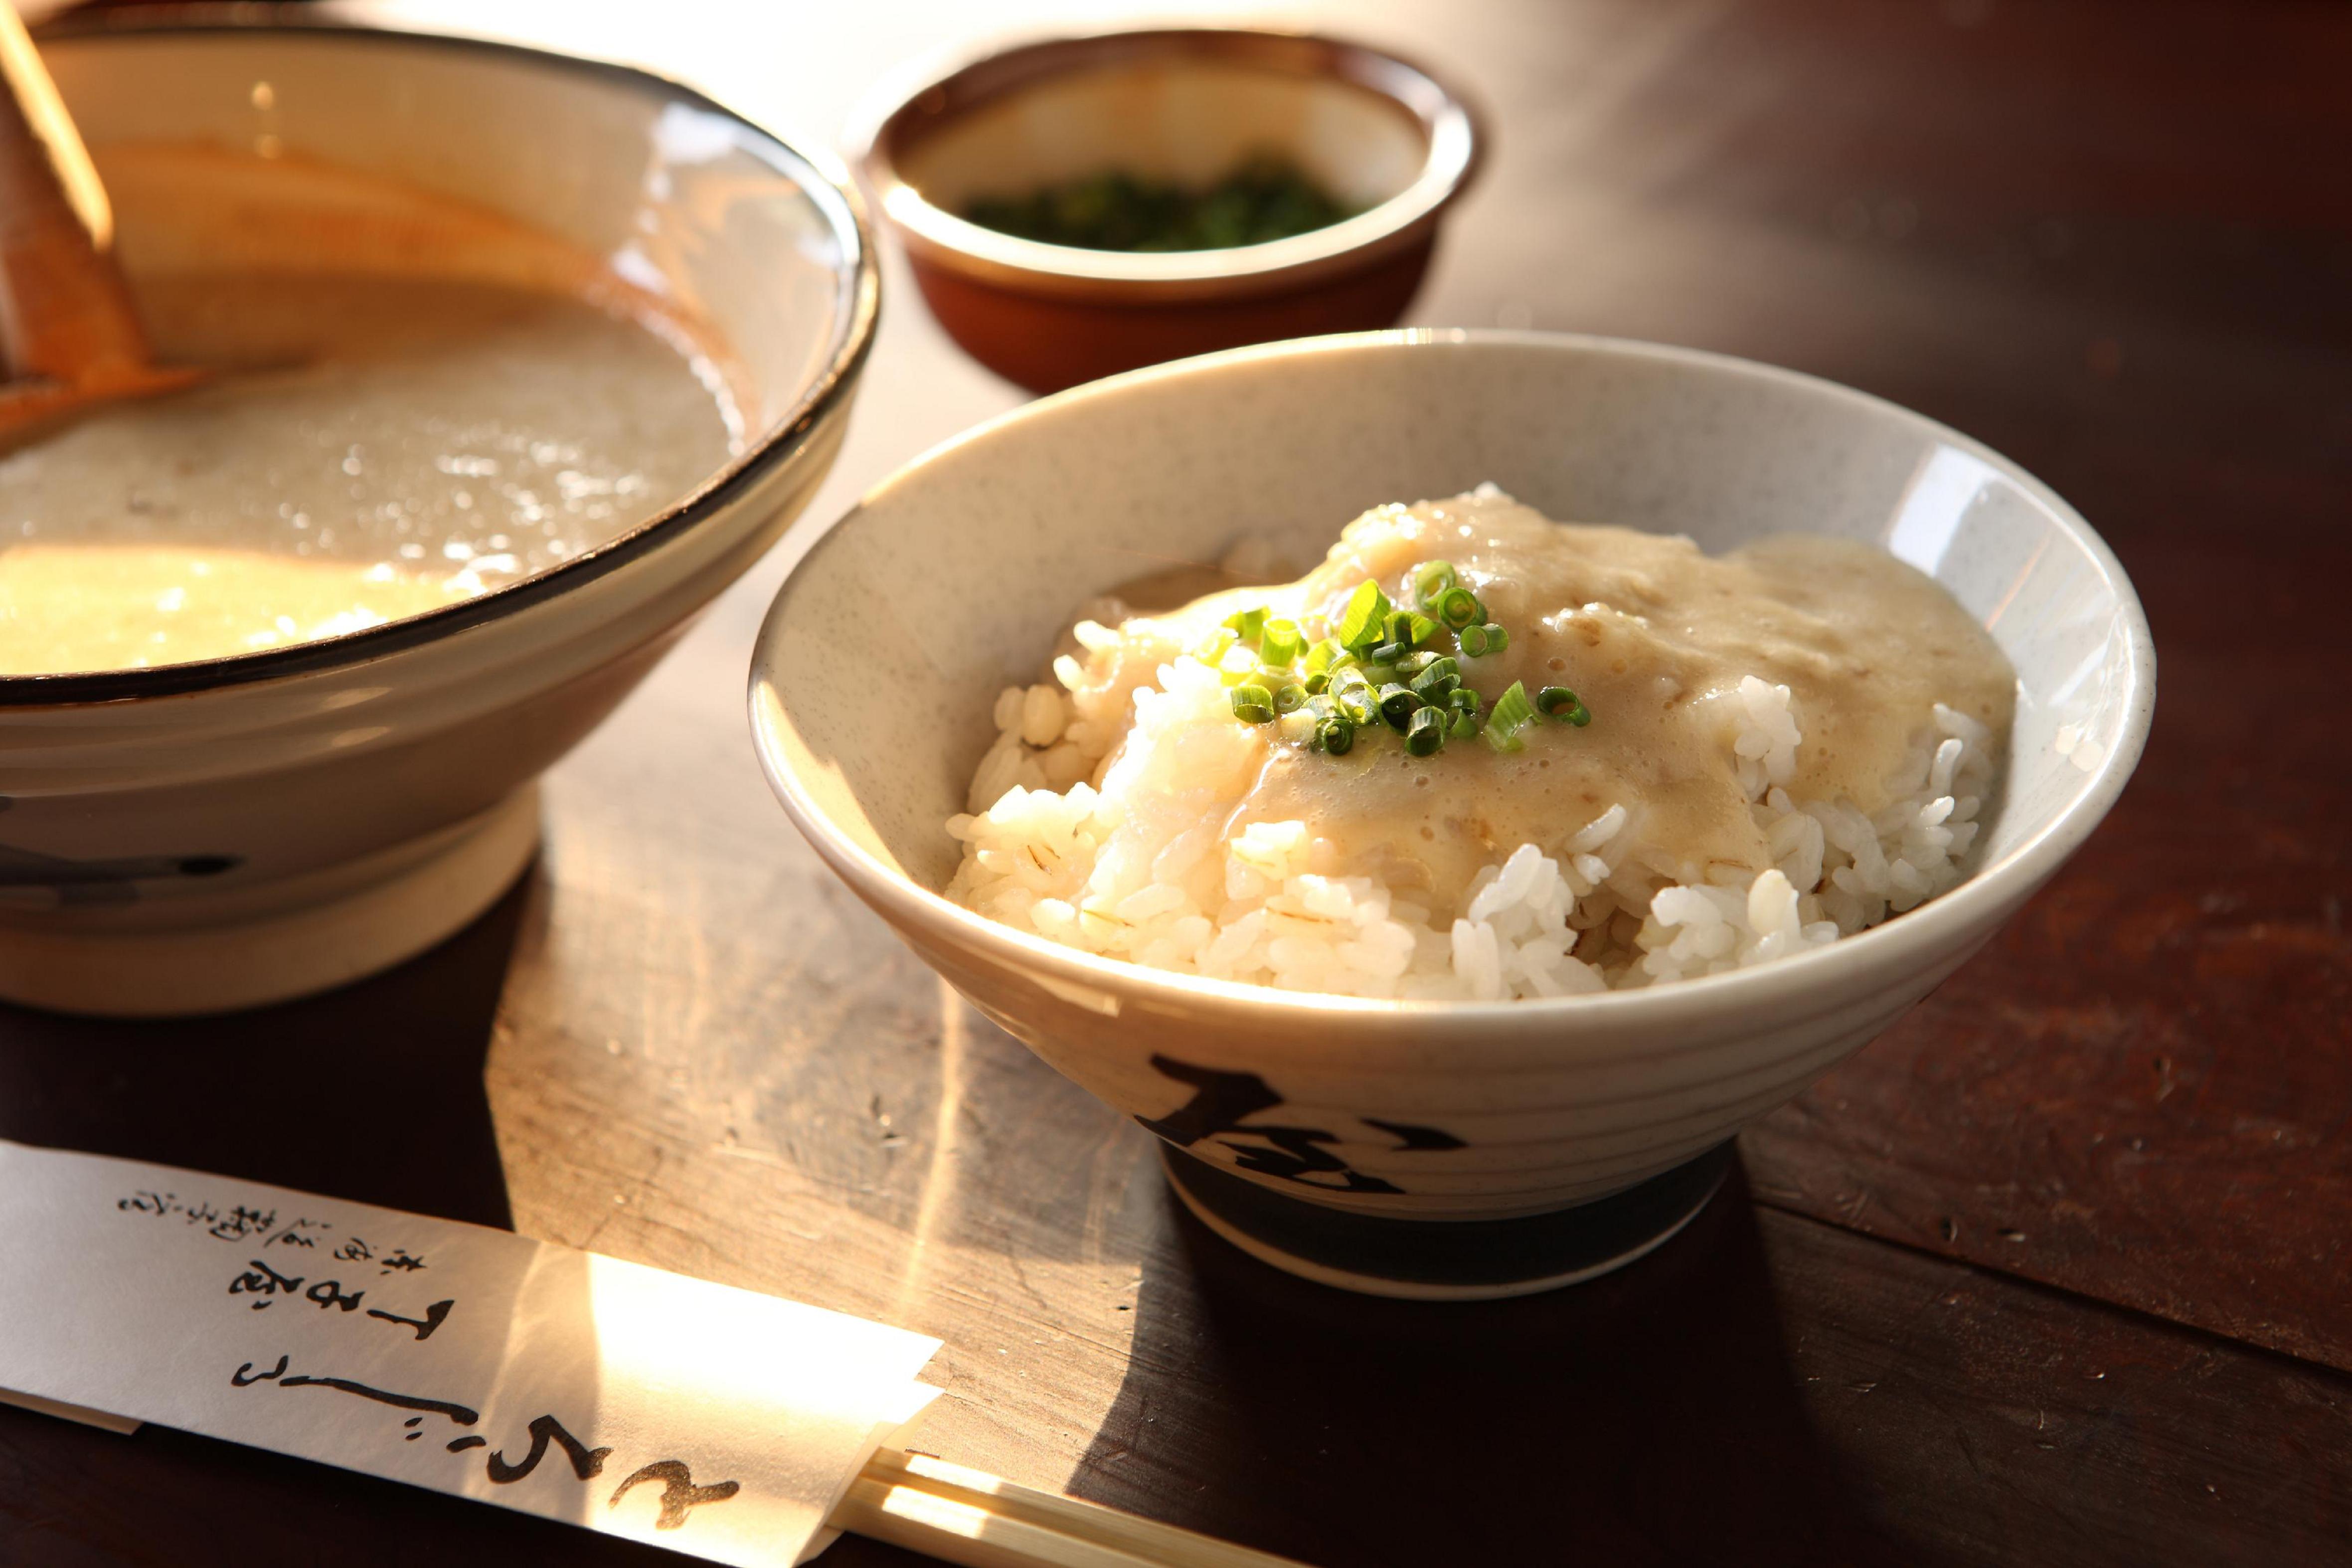 静岡県産の自然薯と自家製の白みそ仕立てのとろろ汁。